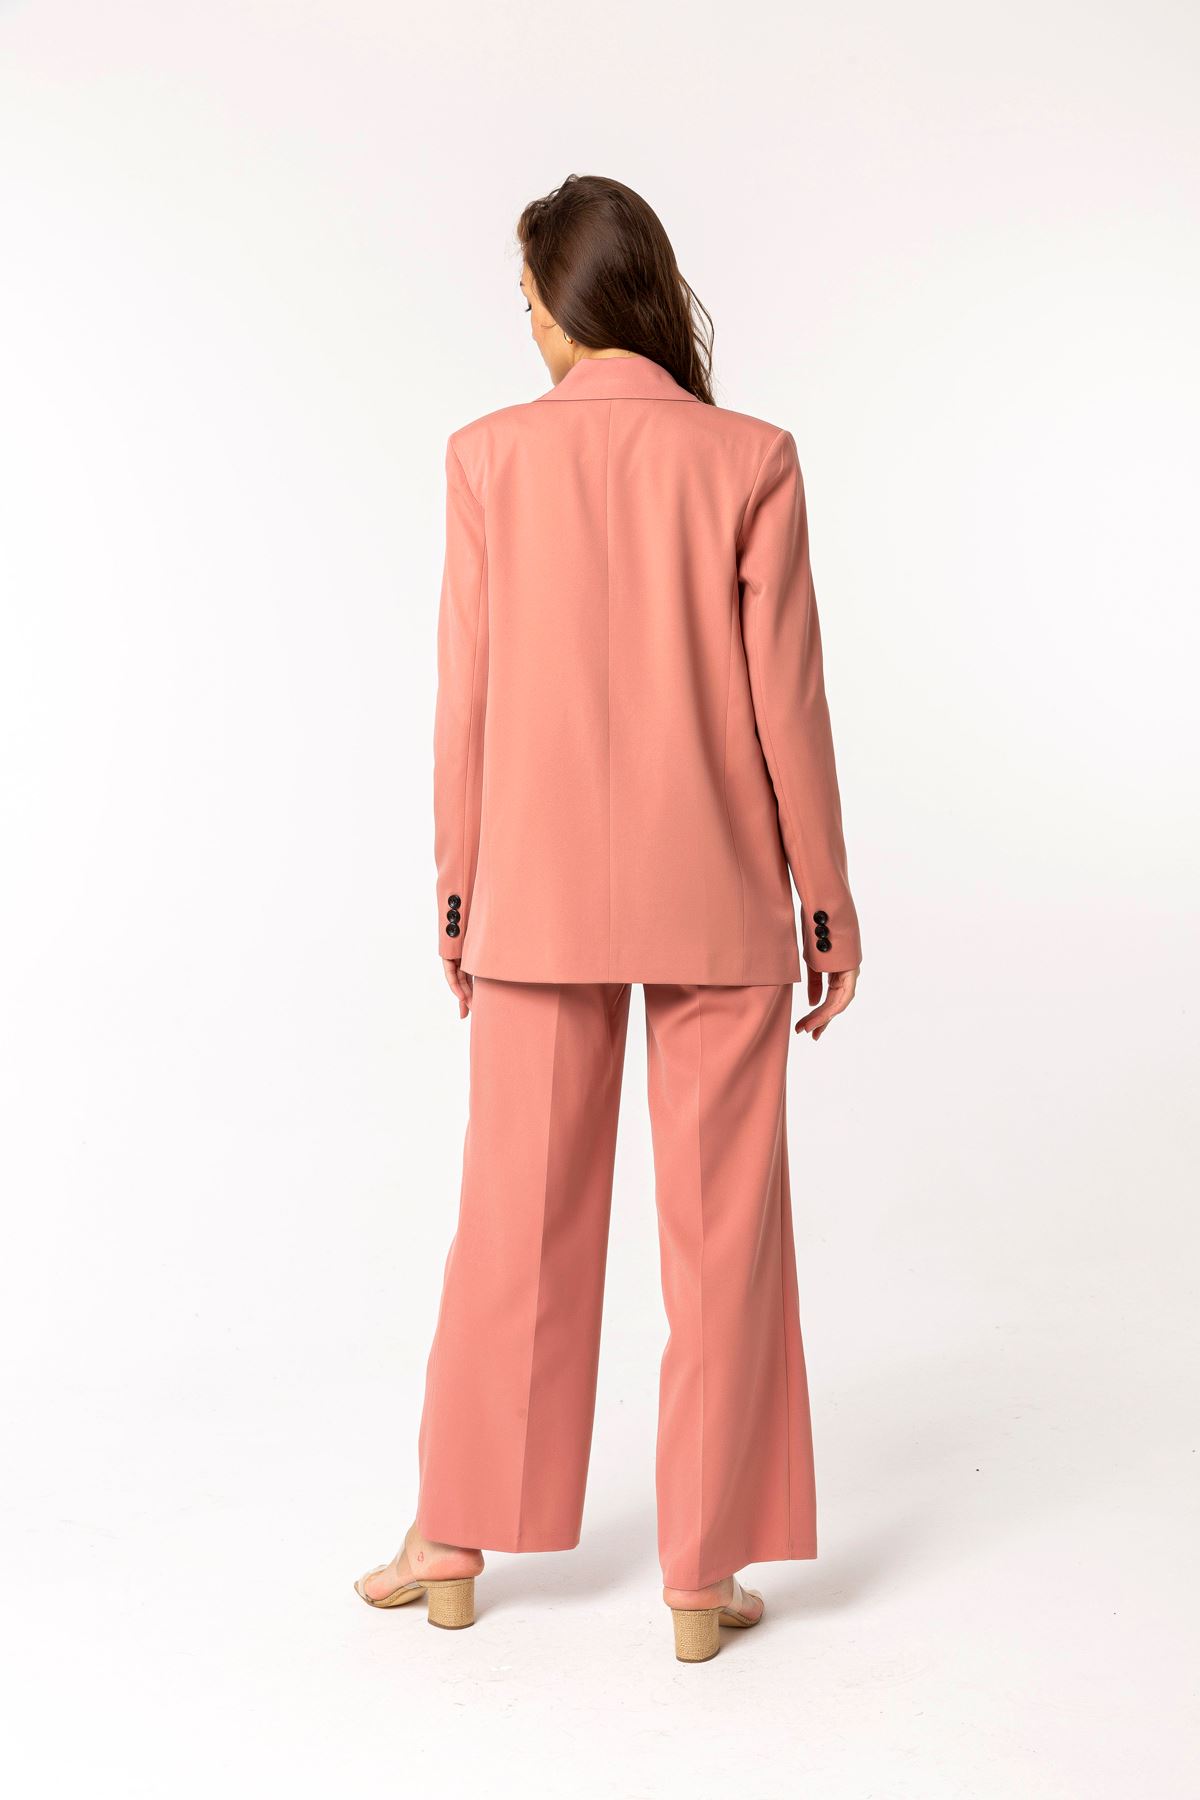 Atlas Fabric Revere Collar Below Hip Classical Single Button Women Jacket - Light Pink